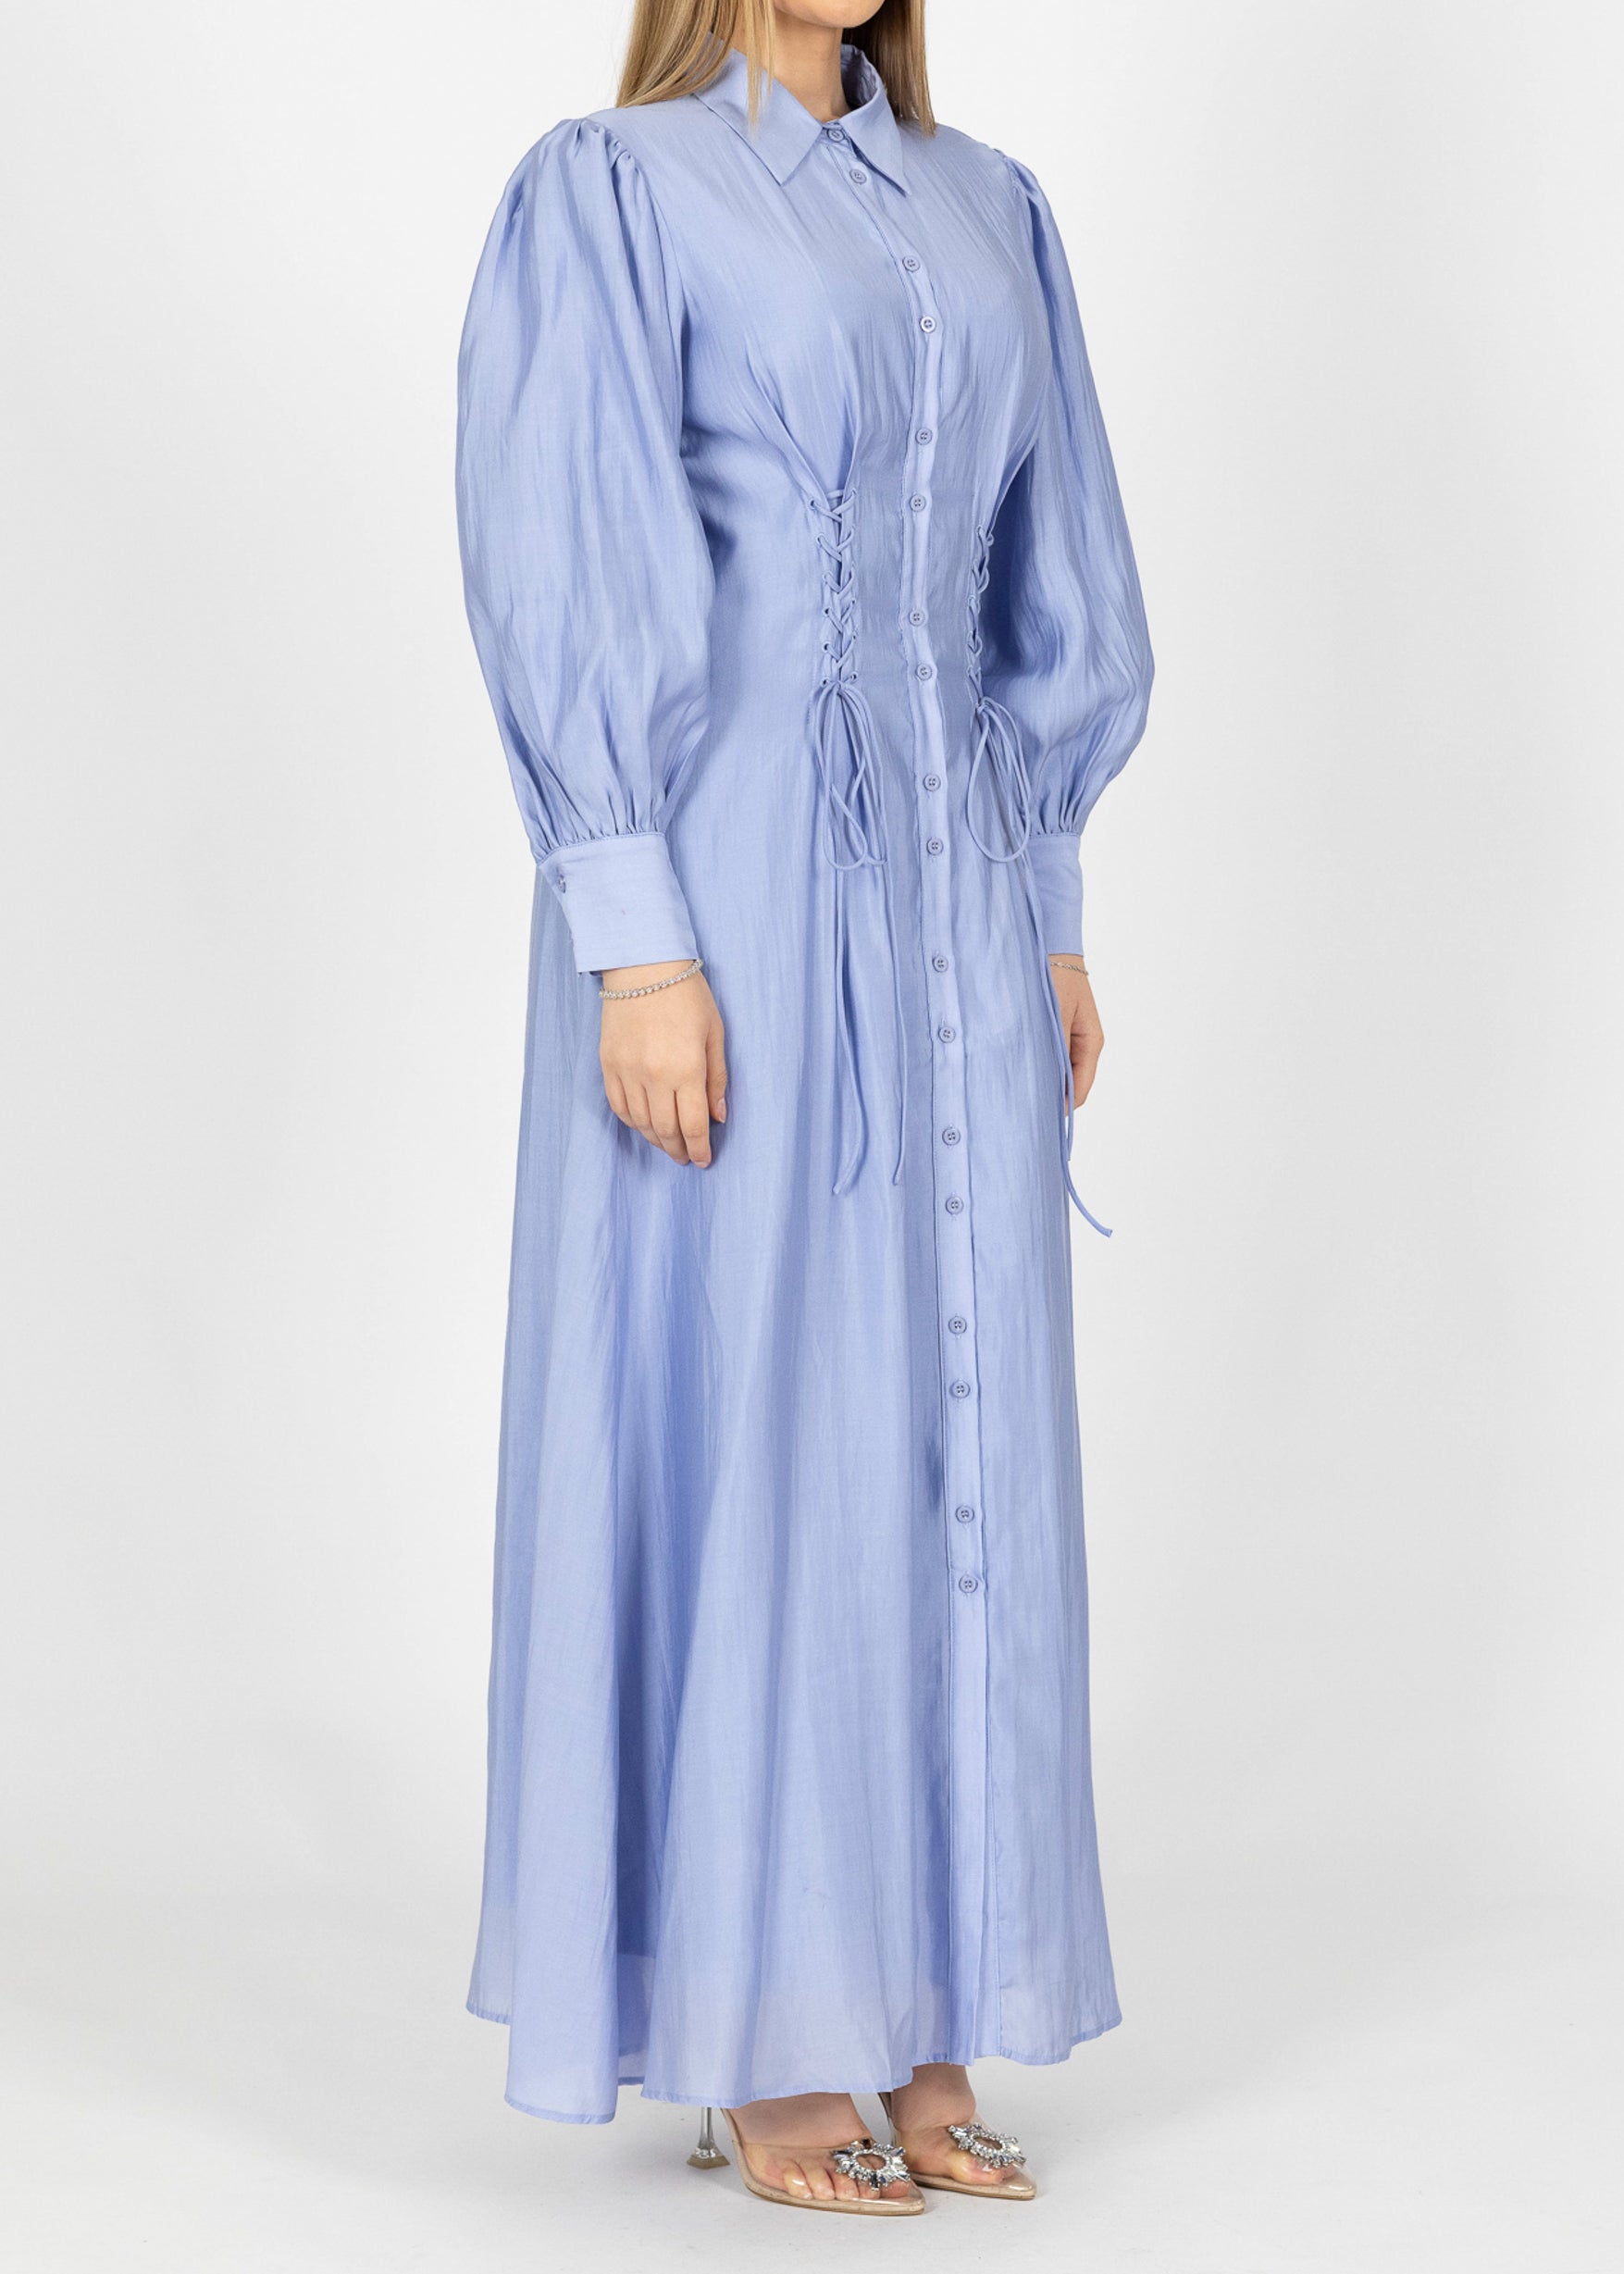 M7935Babyblue-dress-abaya